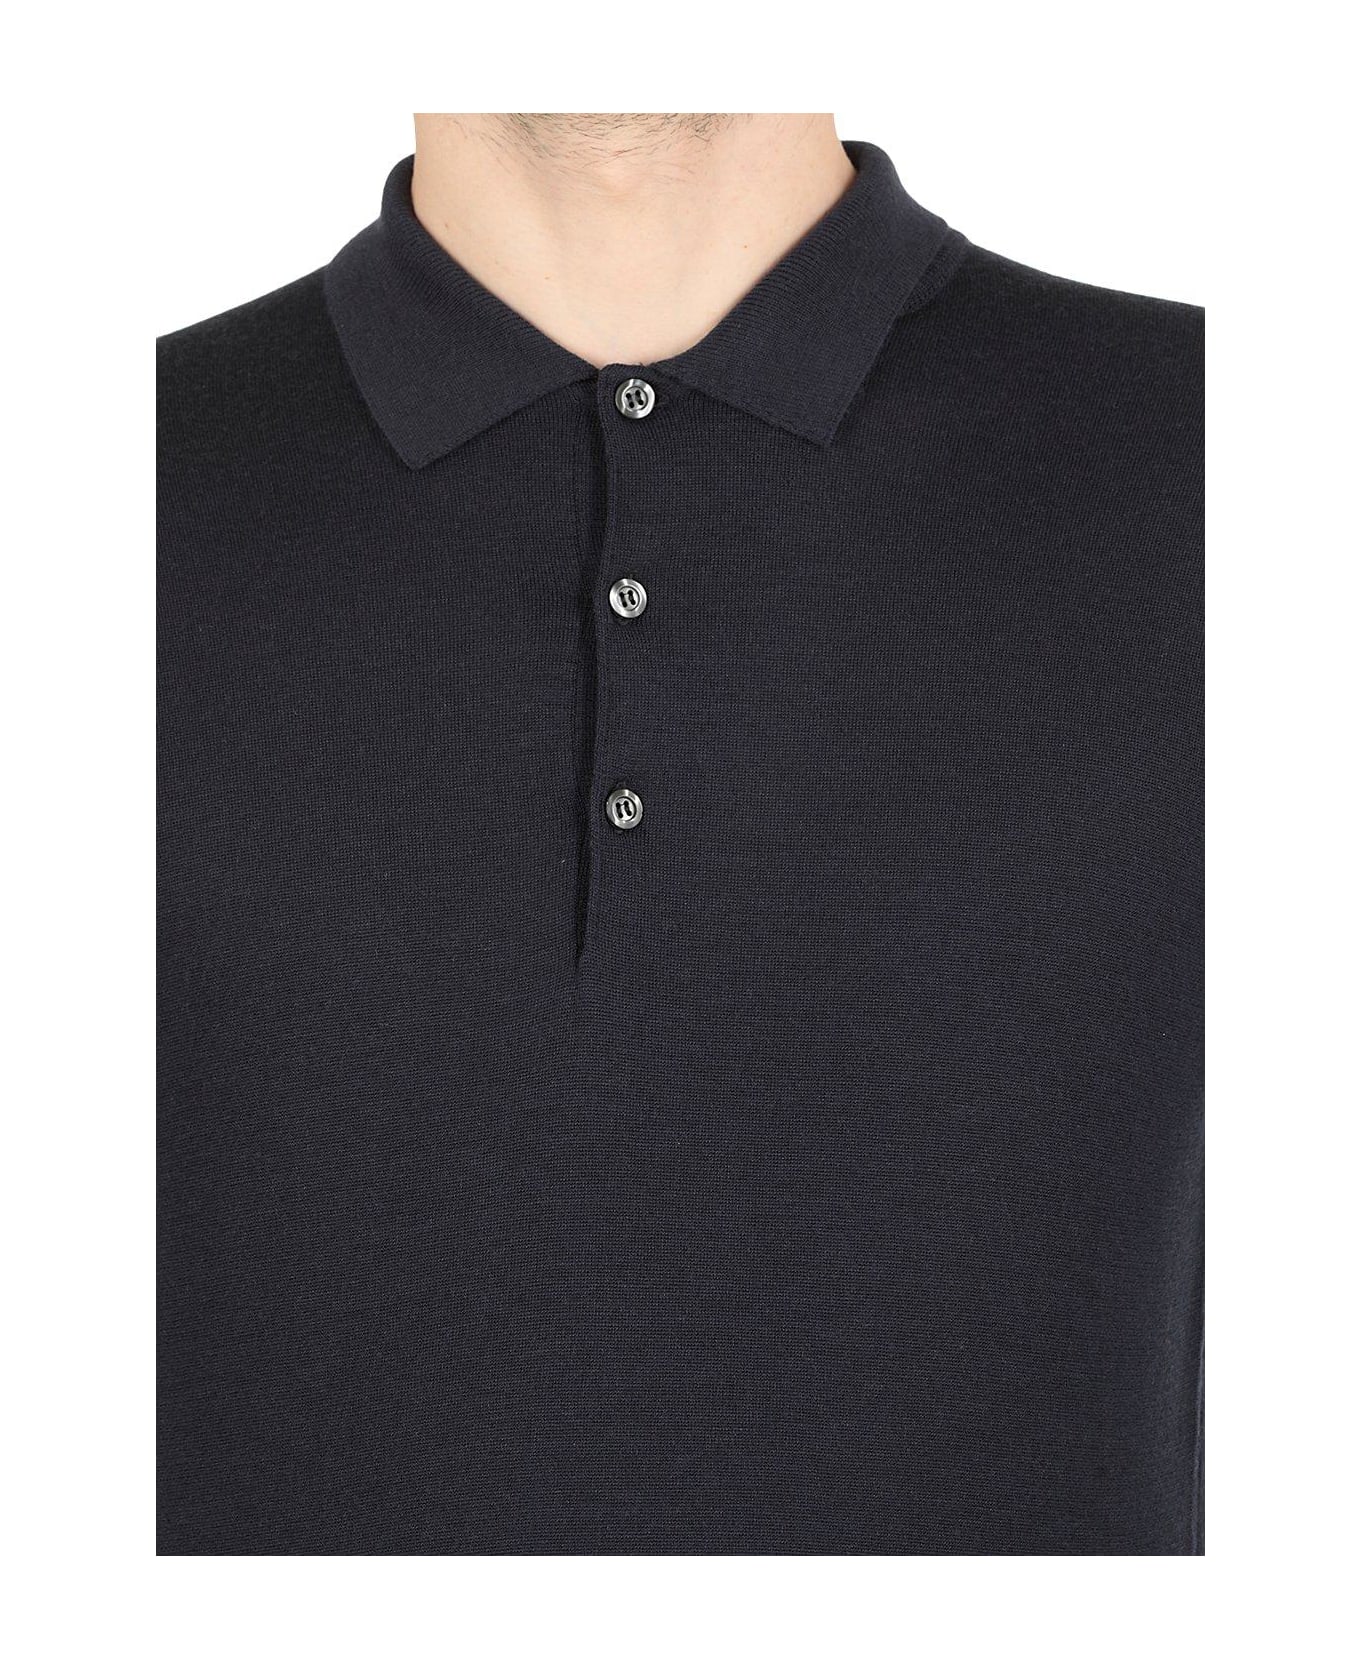 John Smedley Belper Buttoned Knitted Polo Shirt - Blue